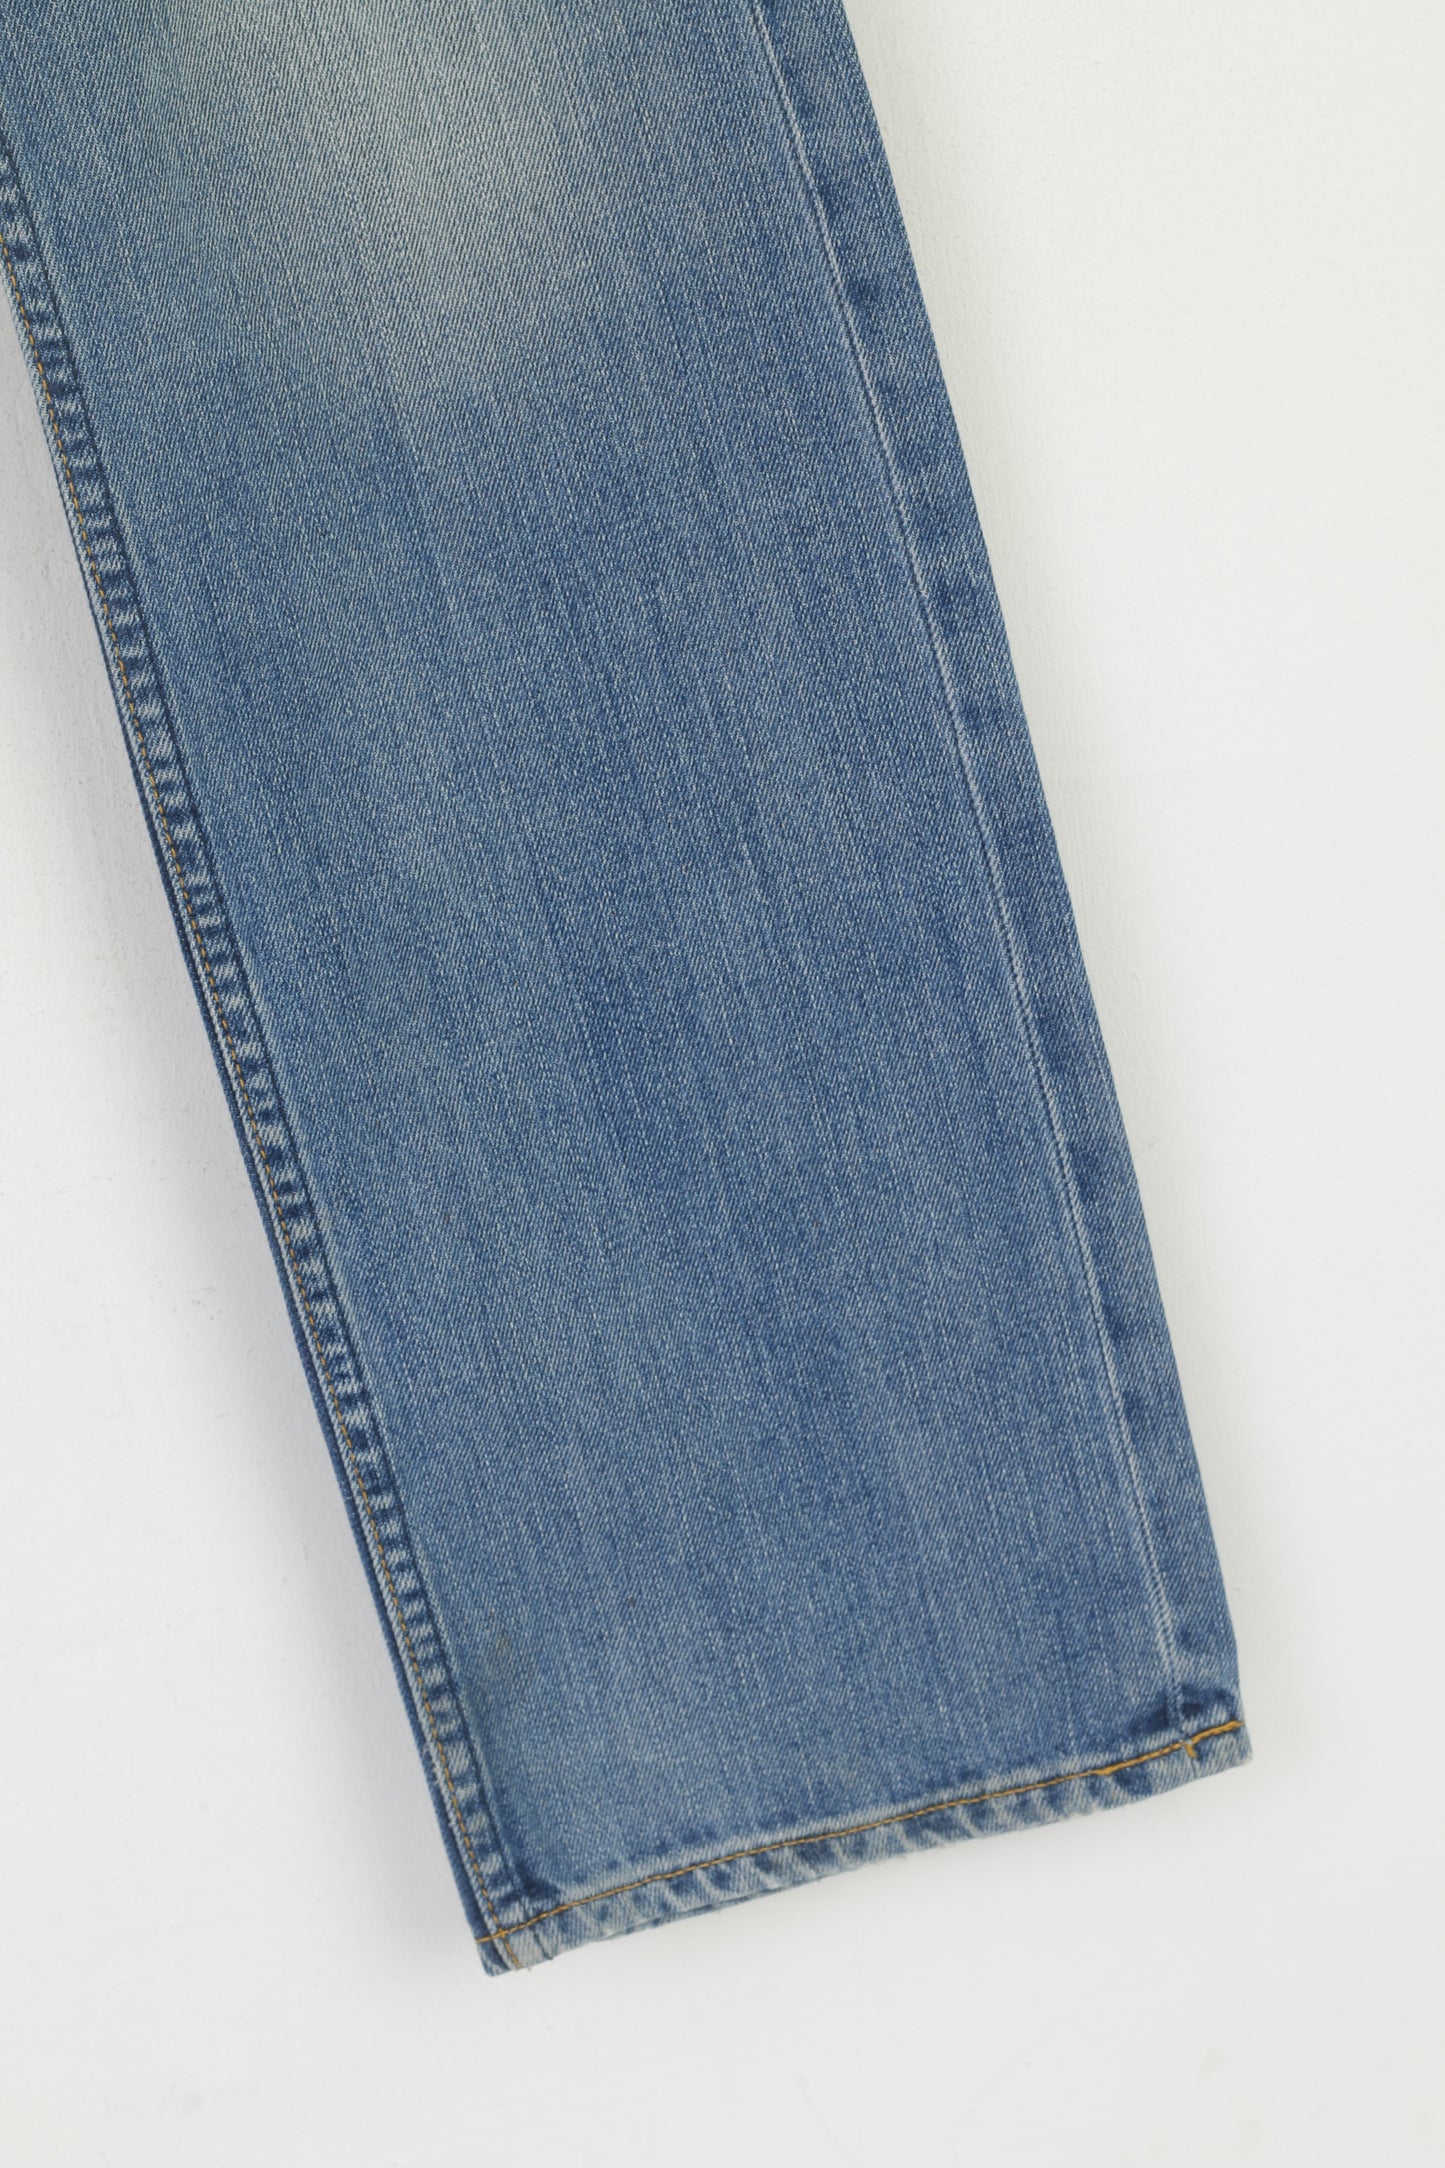 Lee Men 33 Jeans Trousers Blue Cotton Zed Classic Straight Slim Leg Vintage Pants